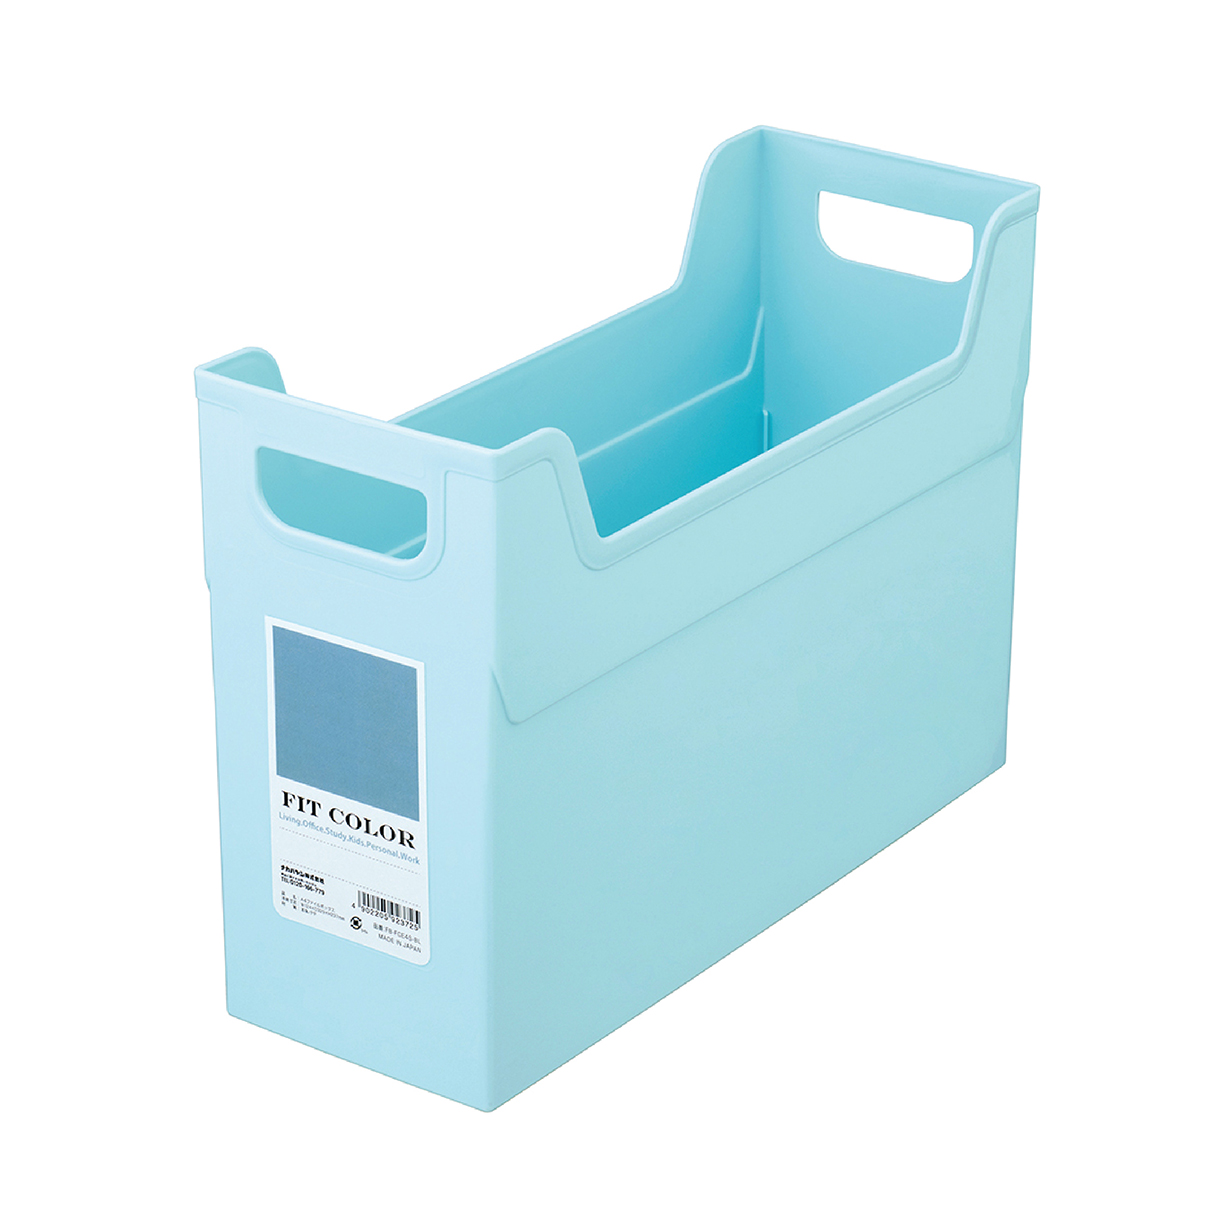 NCL Fit-Colour Storage File Box (S) Sky Blue